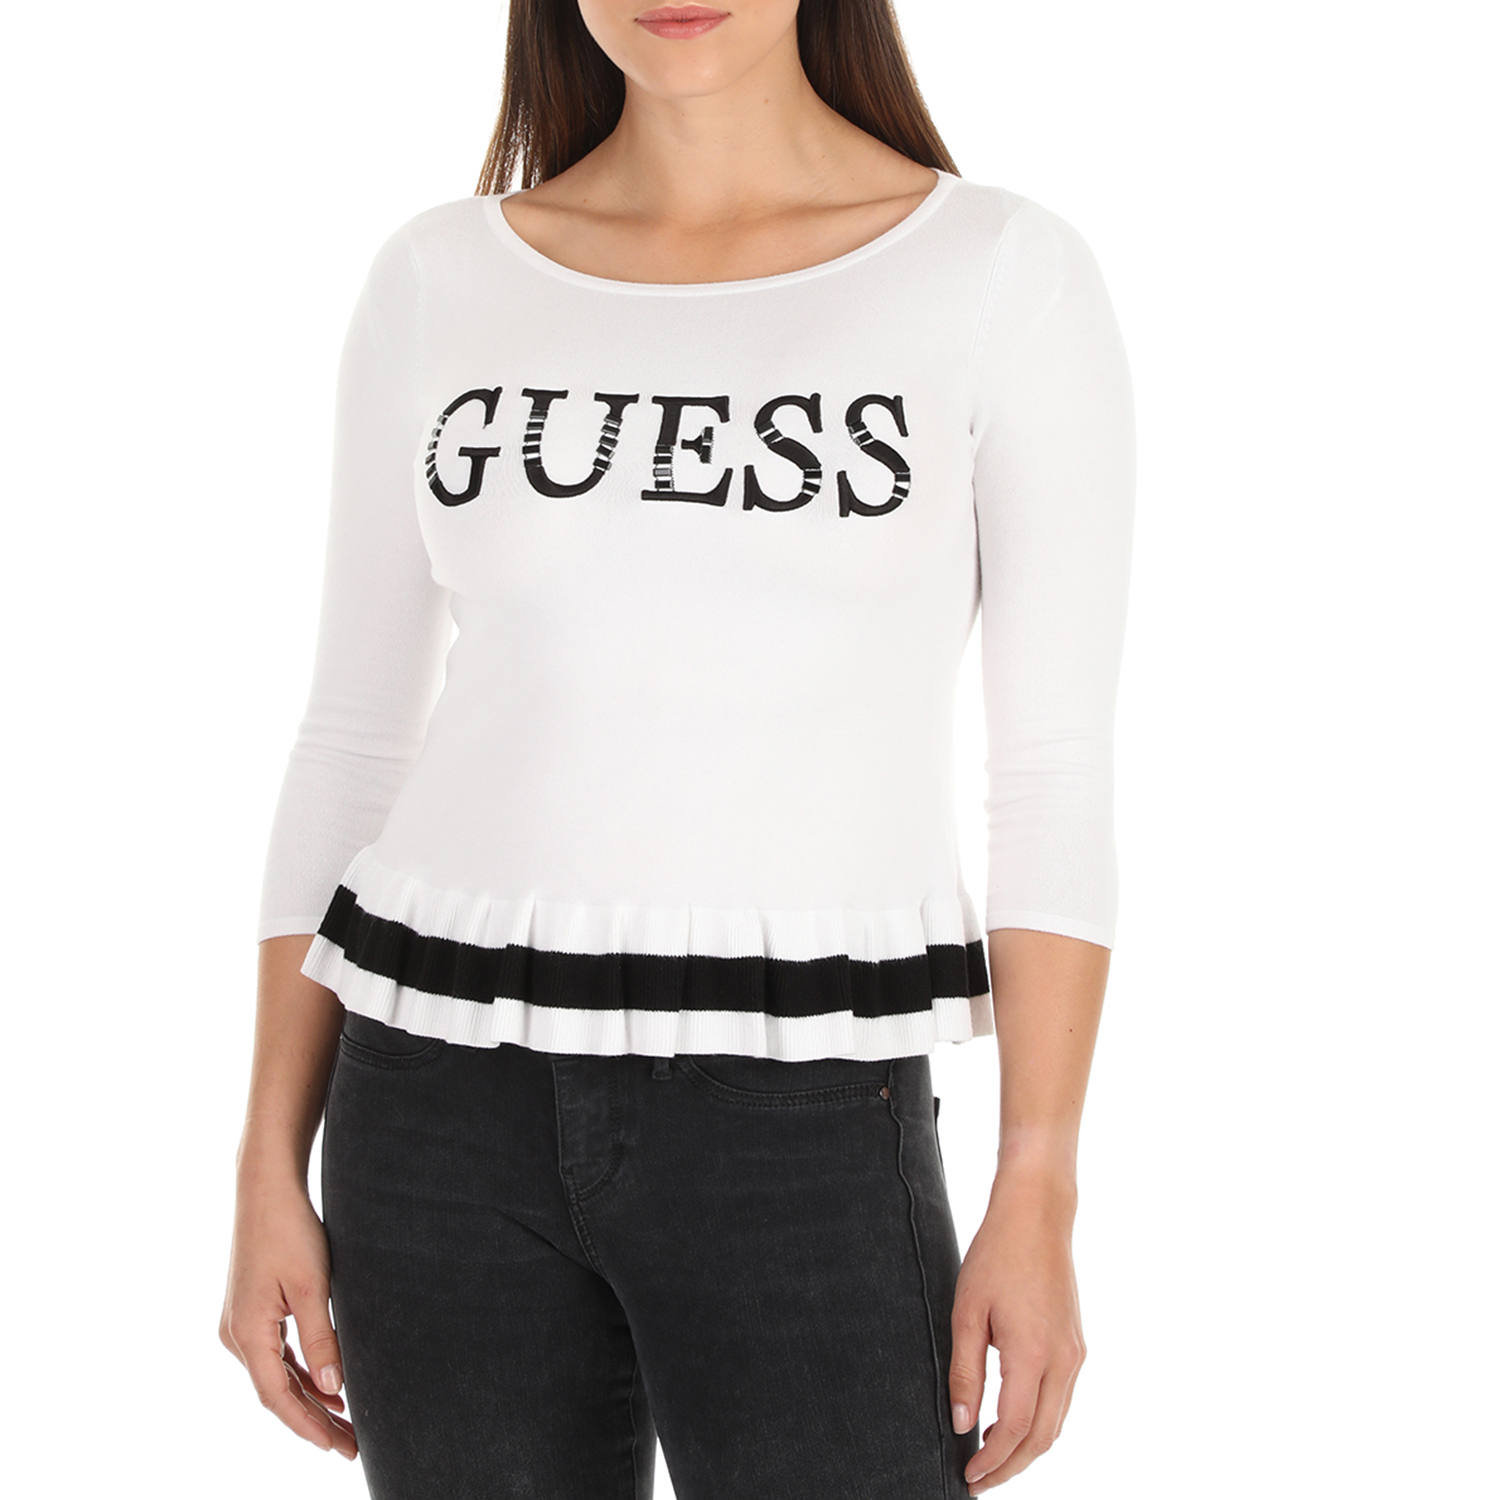 Γυναικεία/Ρούχα/Μπλούζες/Μακρυμάνικες GUESS - Γυναικεία μπλούζα GUESS FRIDA σε λευκό